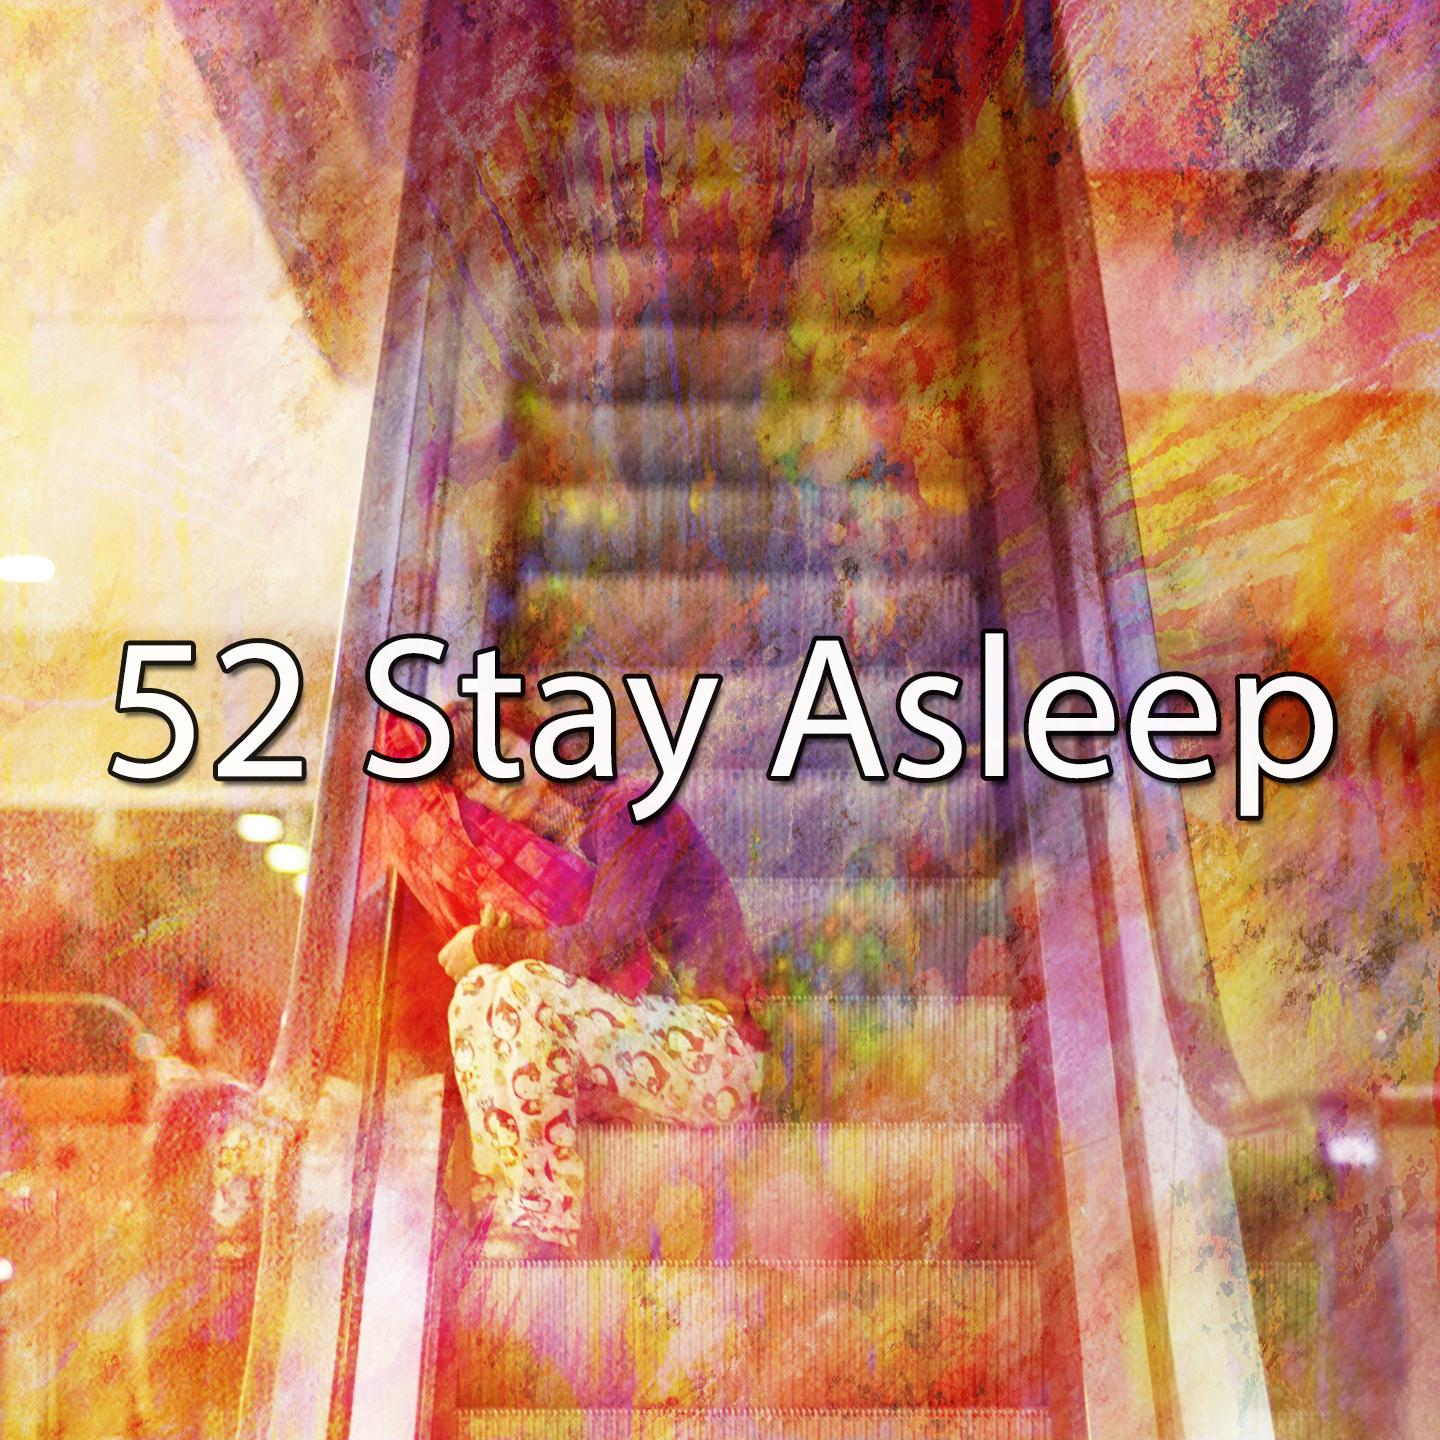 52 Stay Asleep